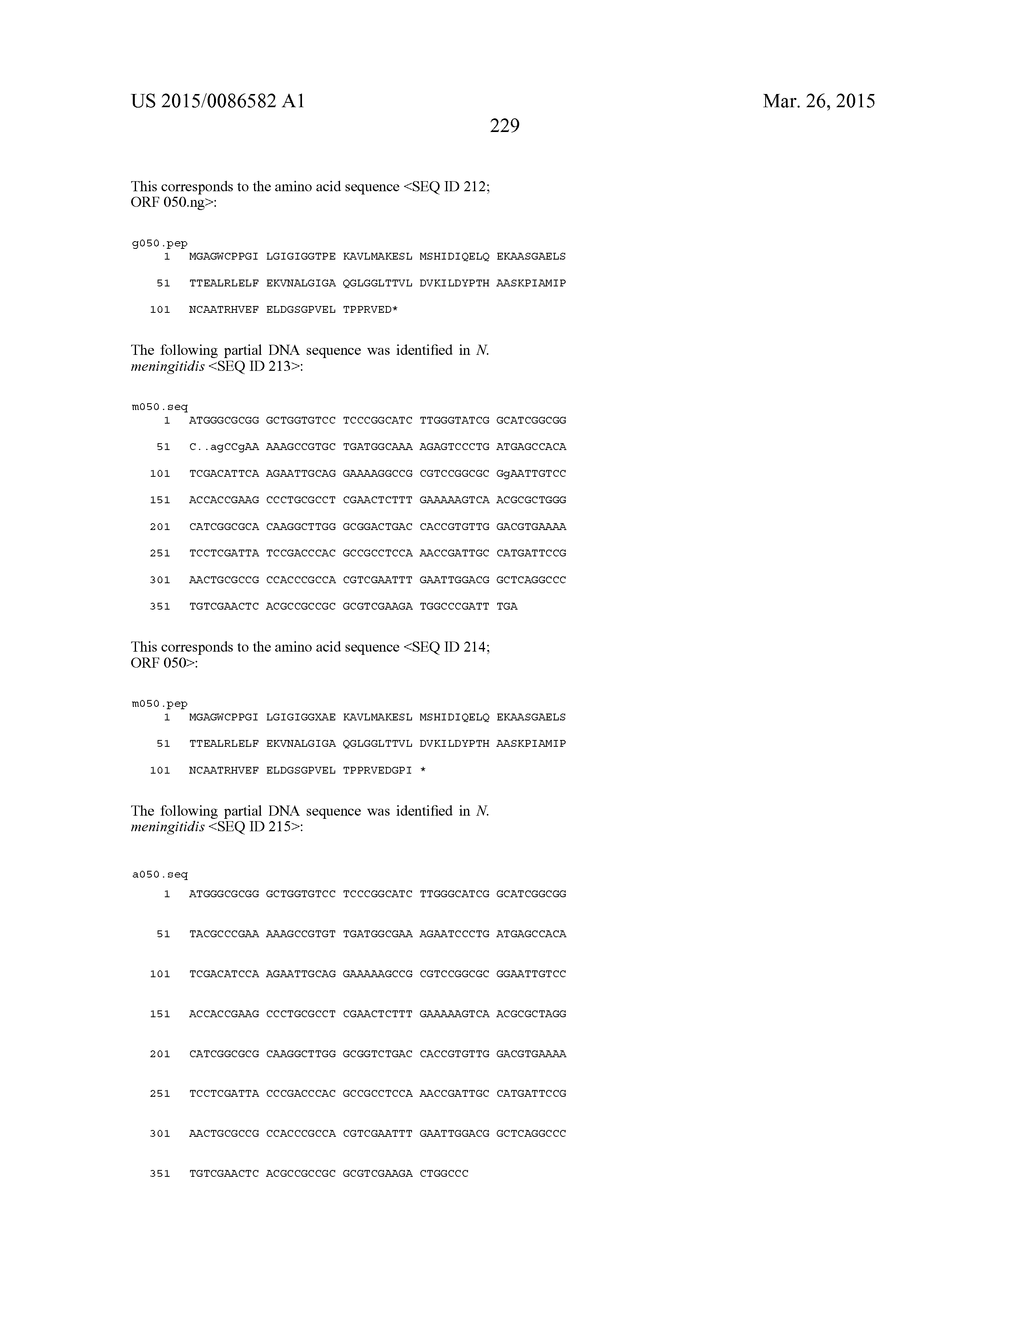 NEISSERIA MENINGITIDIS ANTIGENS AND COMPOSITIONS - diagram, schematic, and image 261